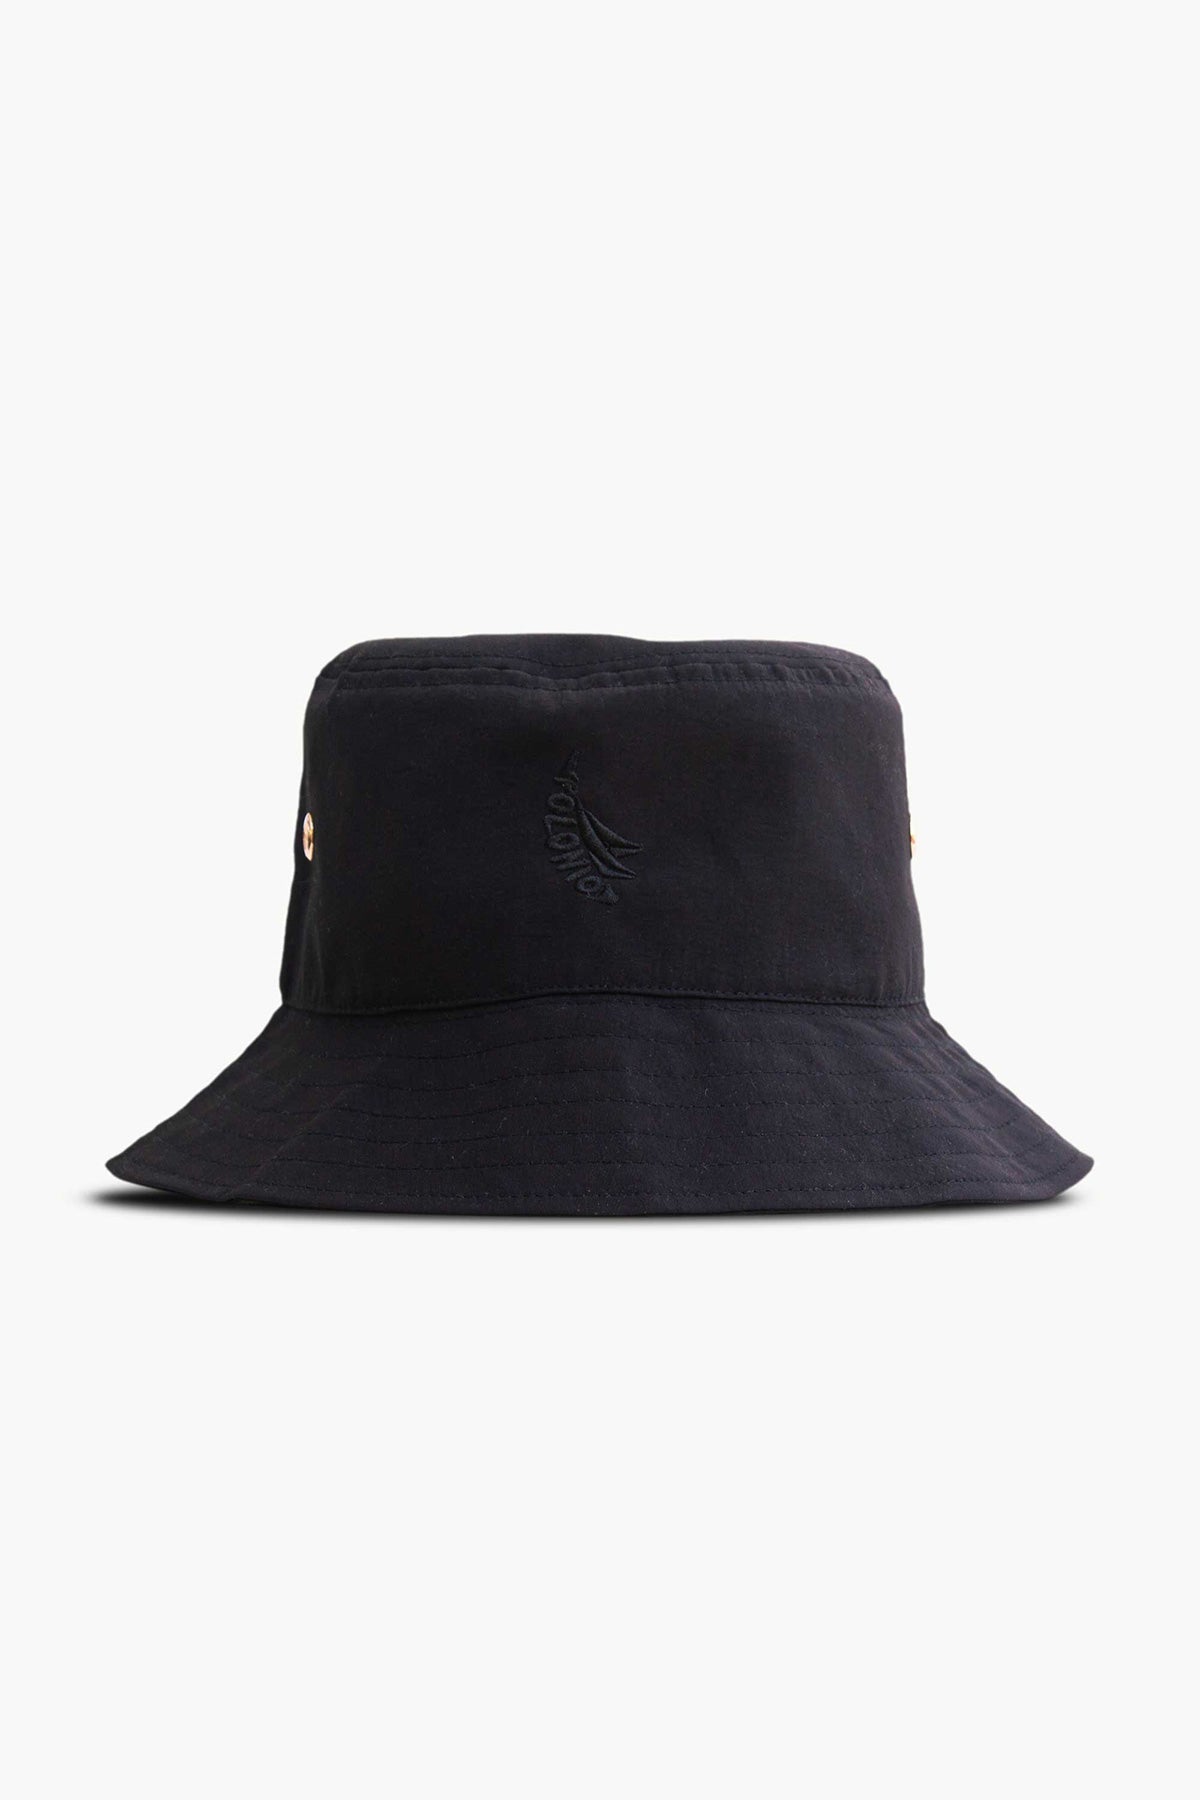 Black Bucket Hat - Polonio